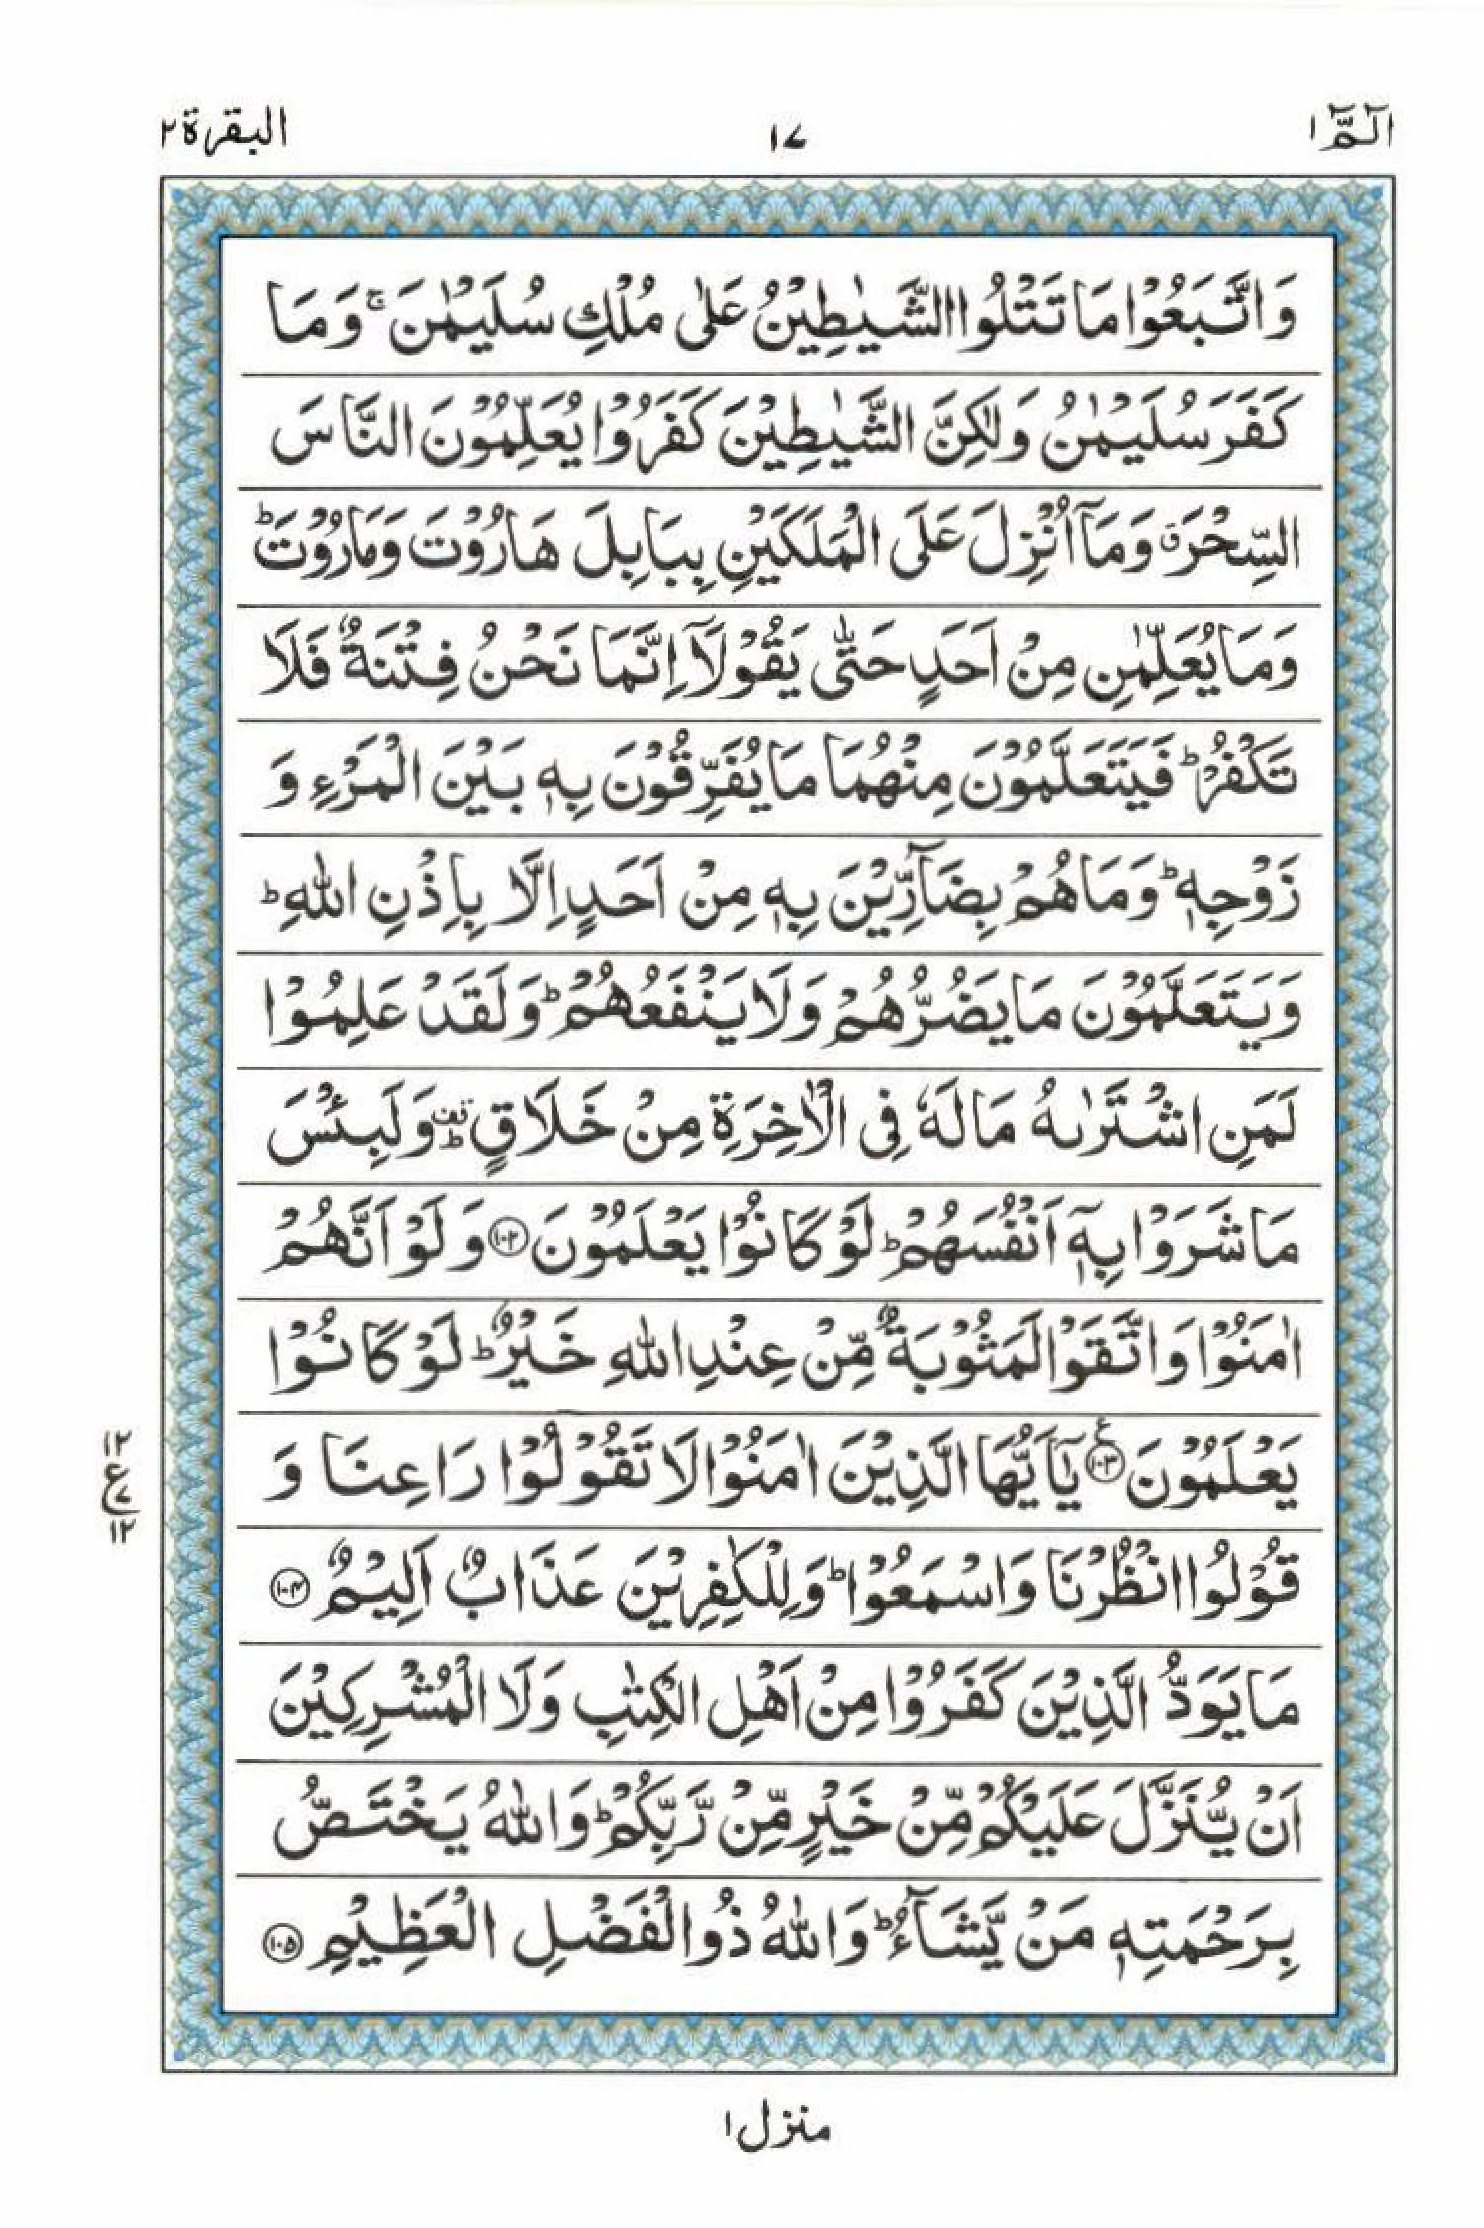 Read 15 Lines Al Quran Part 1 Page No 17, Practice Quran